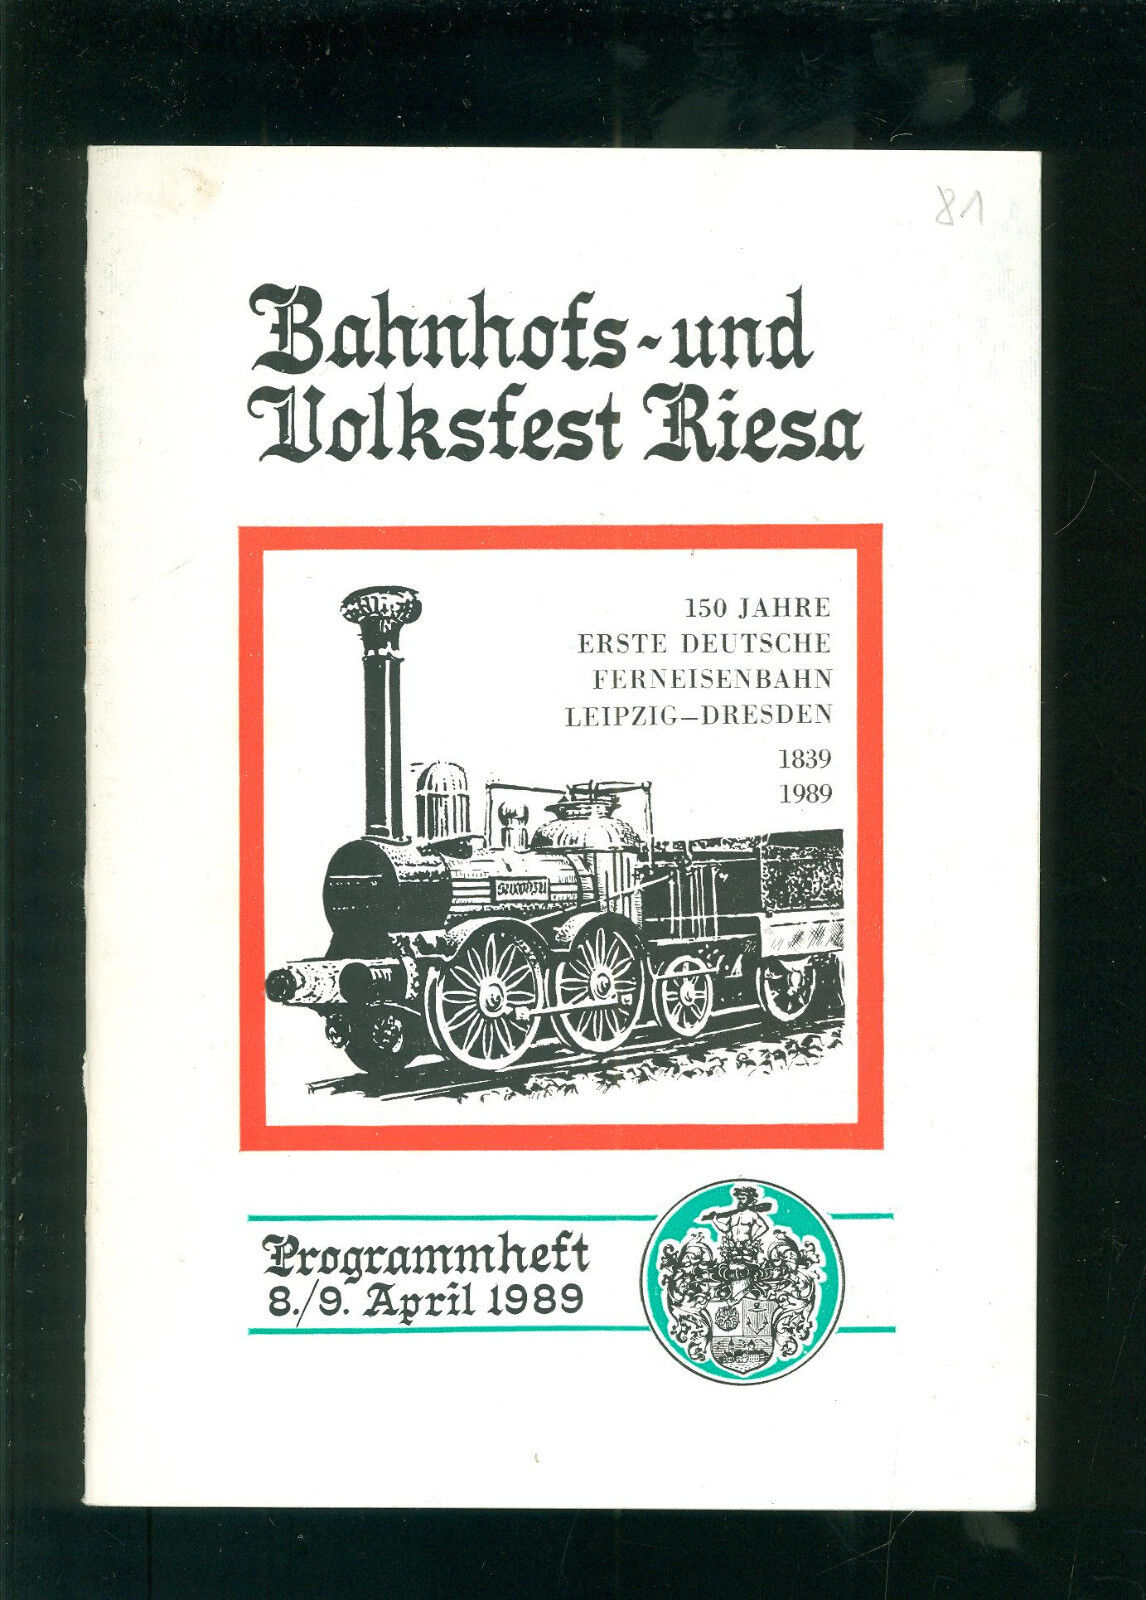 Bahnhofs-Volksfest RIESA Erste Deutsche Eisenbahn Leipzig Dresden 1839-1989